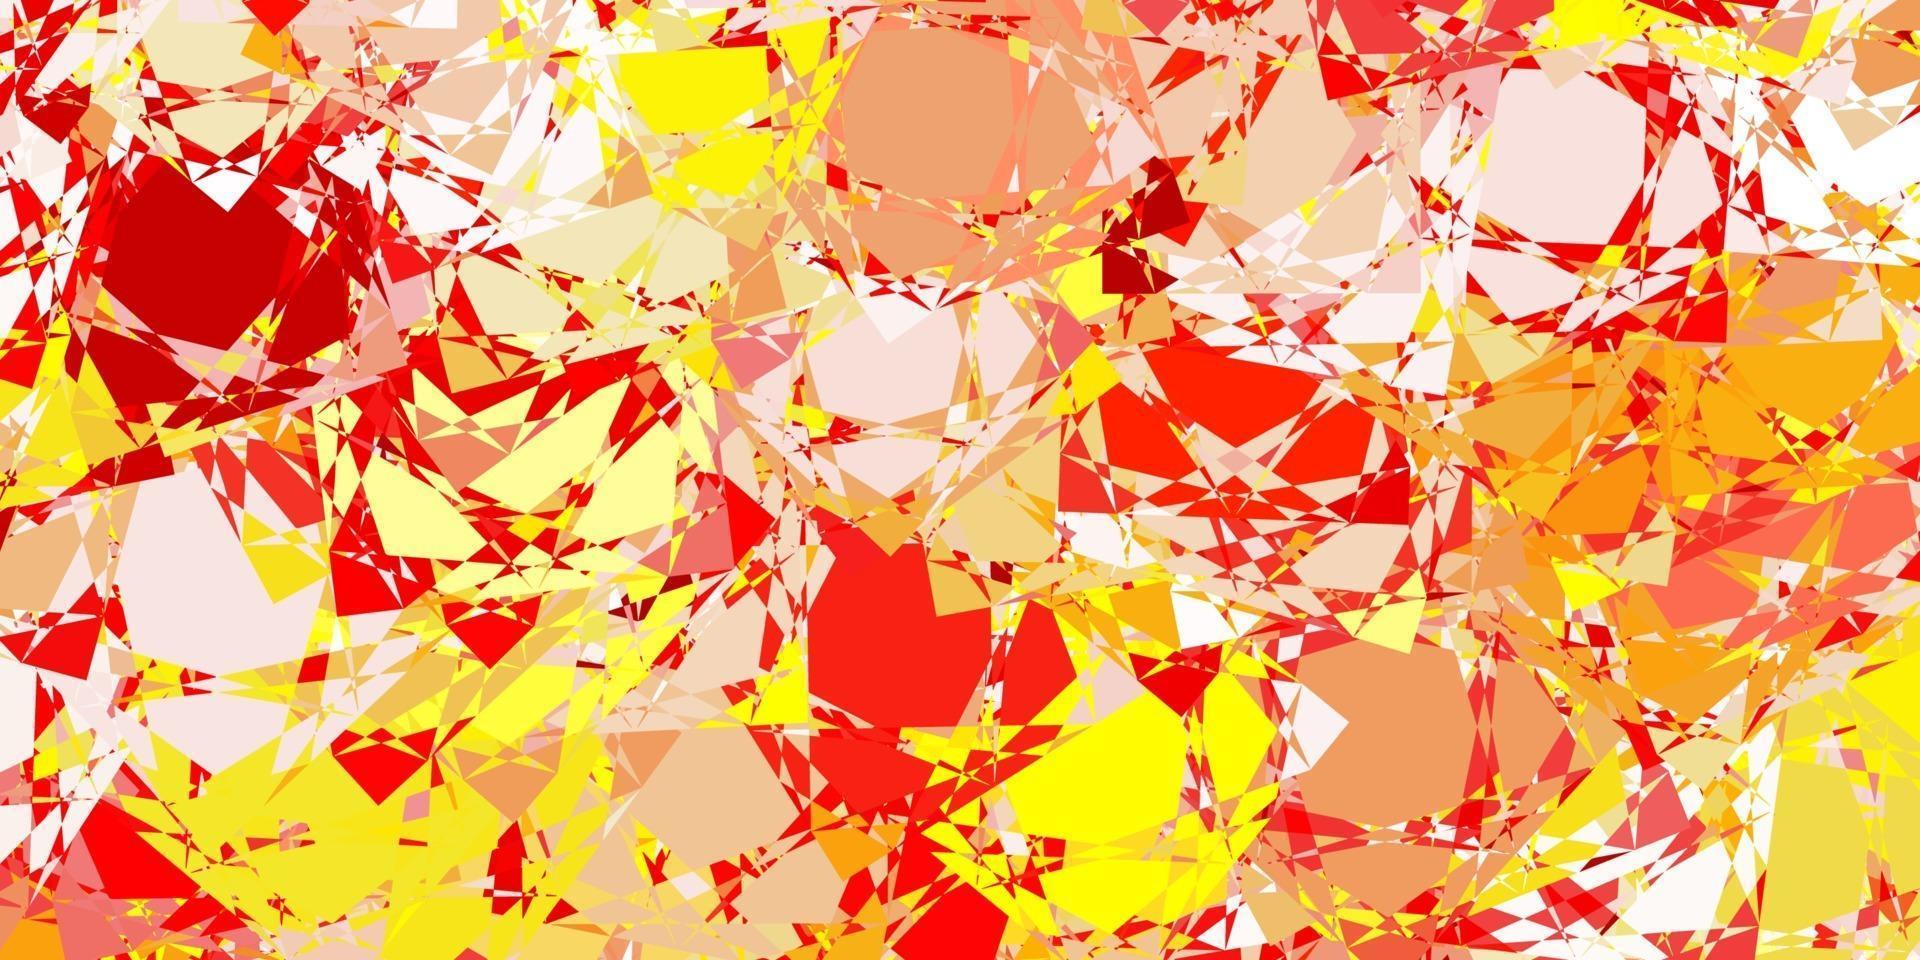 Fondo de vector rojo, amarillo claro con formas poligonales.